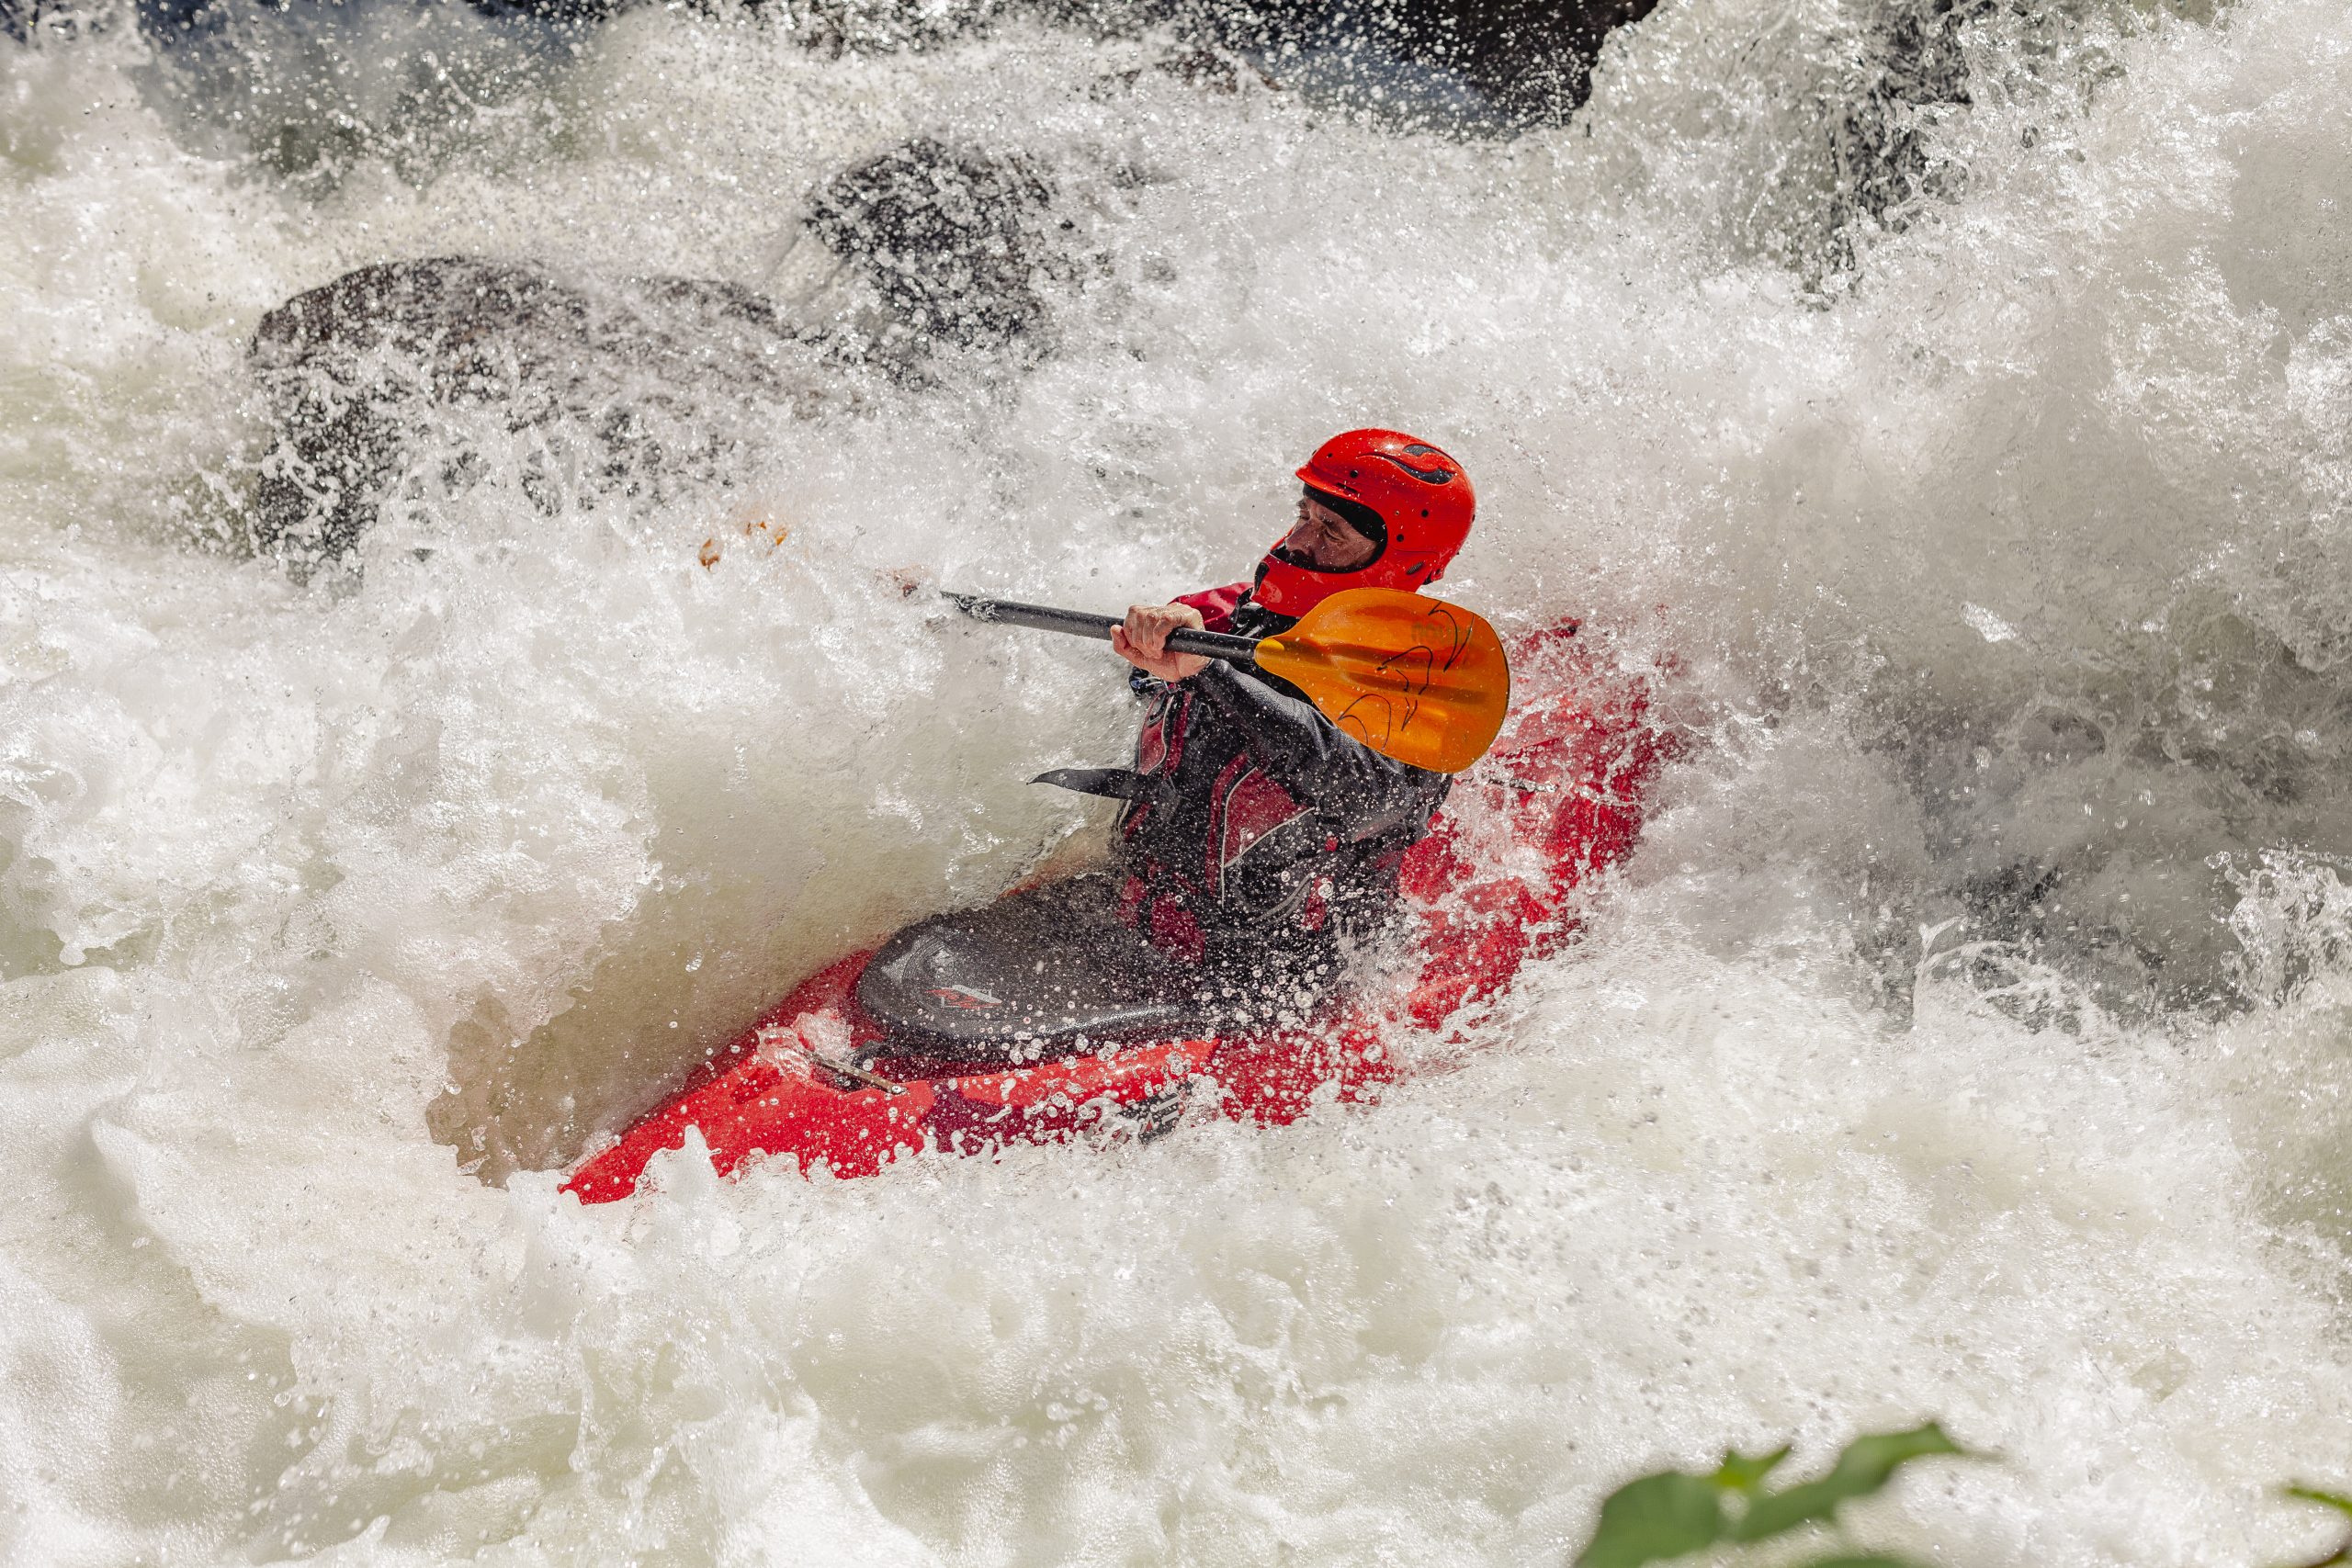 La Rampa. Río Piqueras. Descenso en piragua. XX competición de Kayak extremo. 23 de julio de 2022.
© Juan San Sebastián. Todos los derechos reservados.